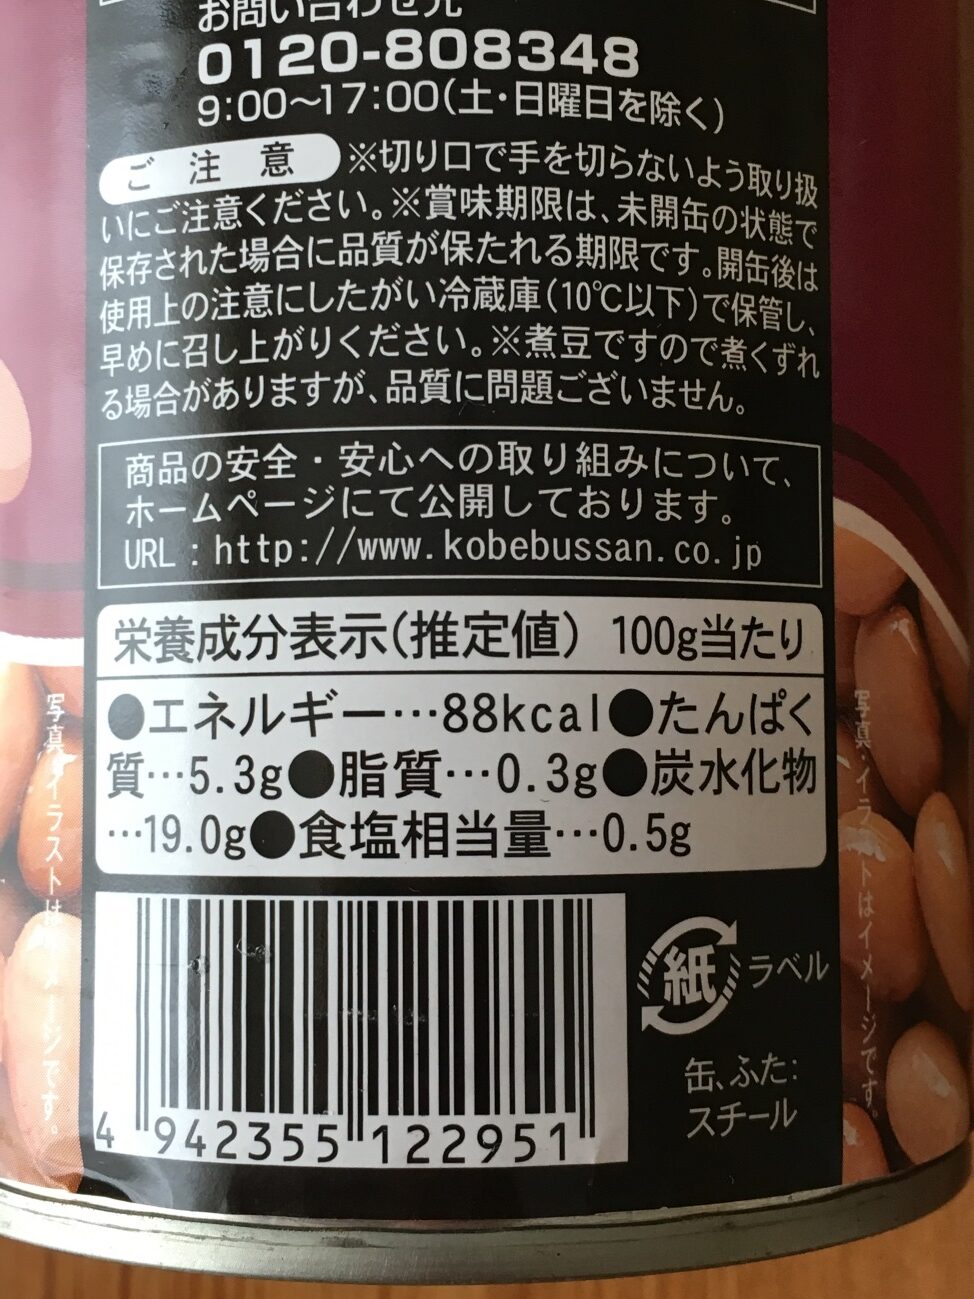 業務スーパーのボーロッティ豆の栄養成分表示